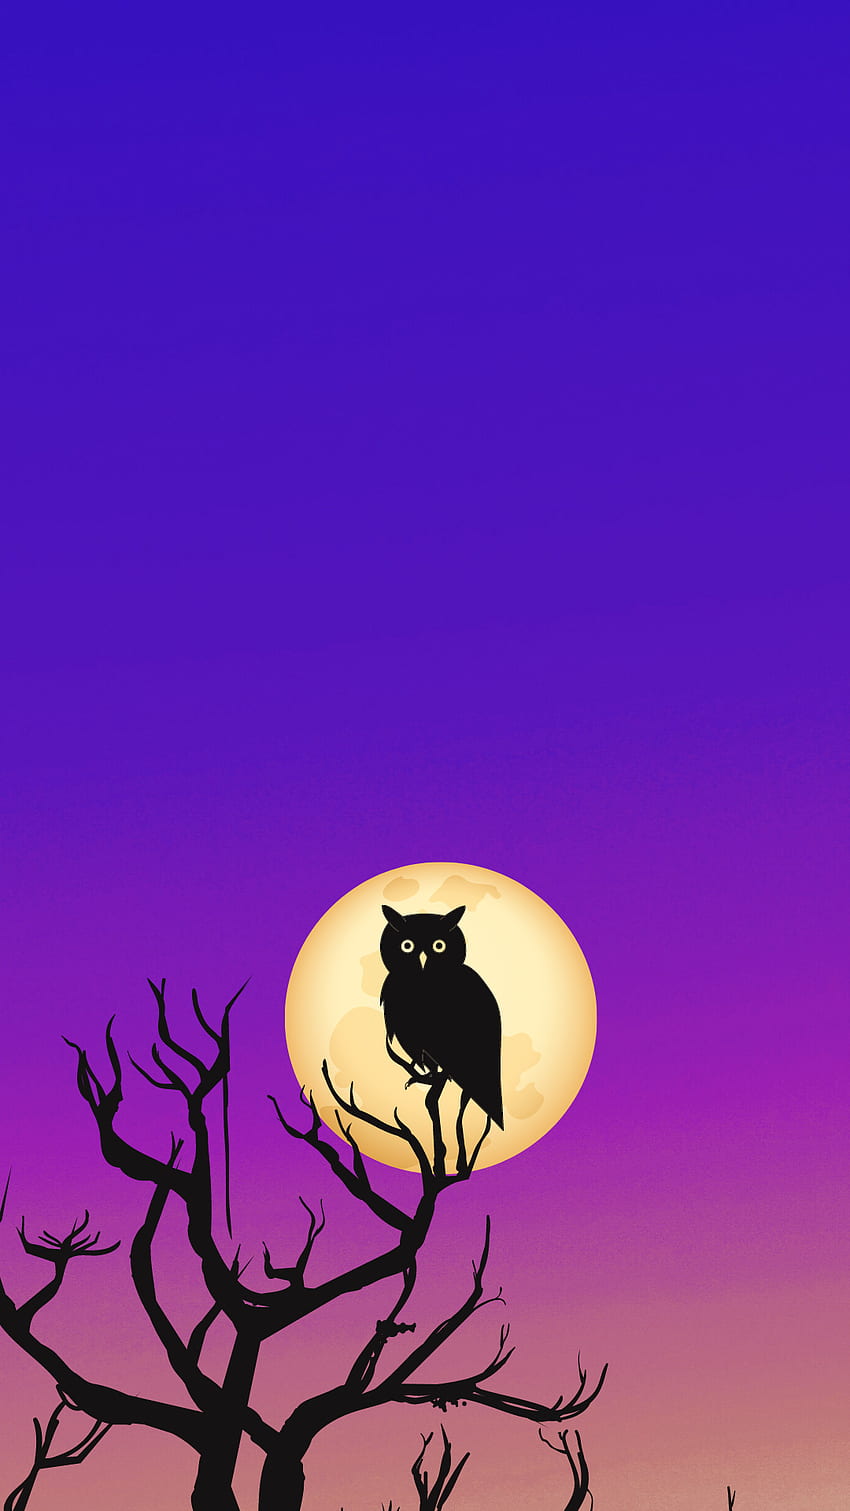 OWL Bulan, langit, Nacht, eule, malam, Vollmond, bulan purnama, ungu, himmel, mond wallpaper ponsel HD